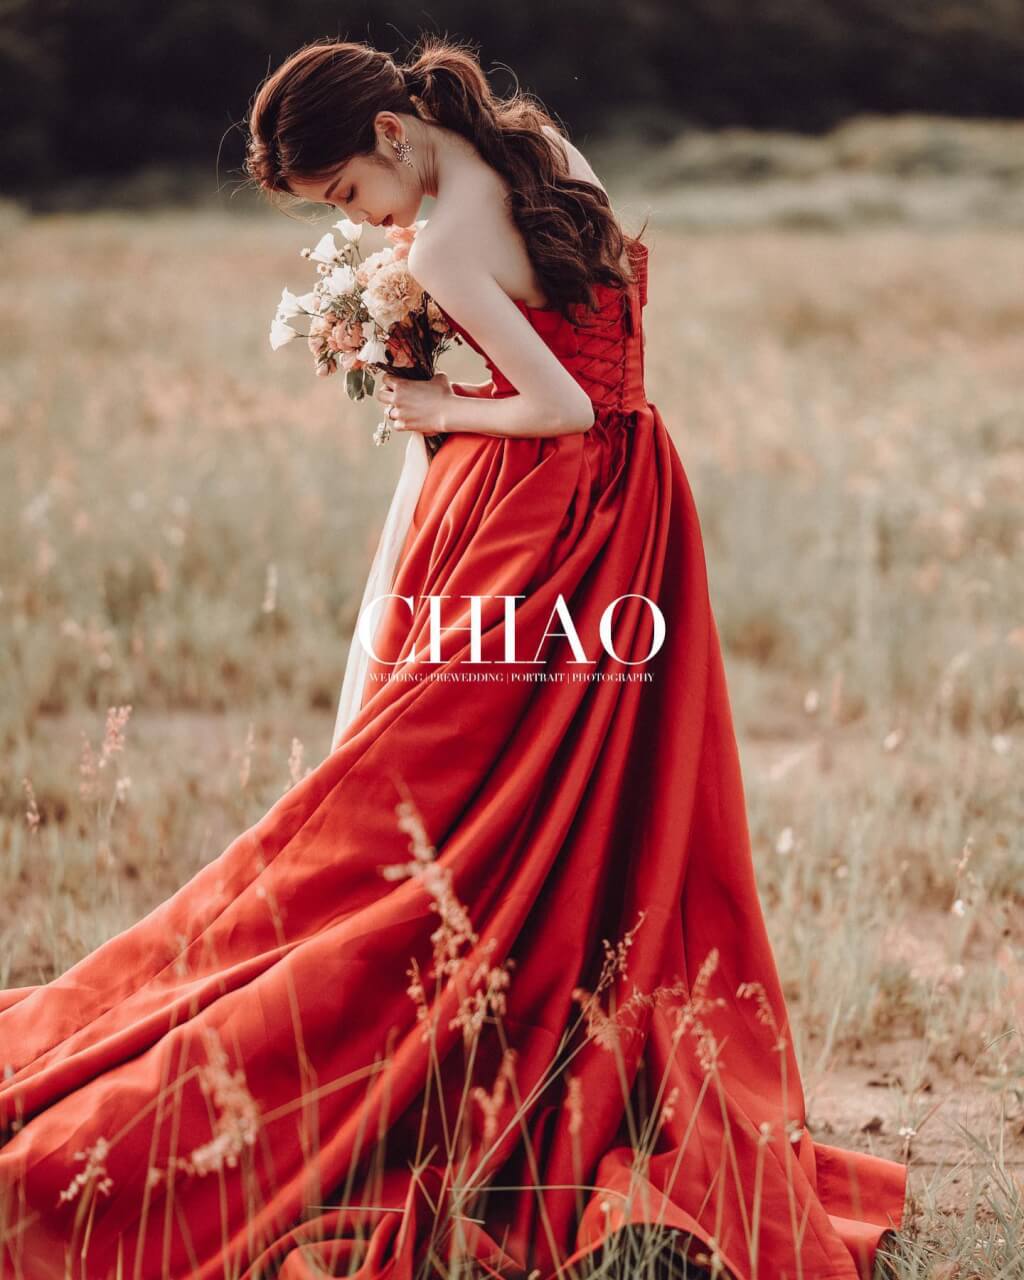 CHIAO Photo Studio / 瑋仁婚紗照分享| 愛情蔓延精緻婚紗 - 禮服出租 | 台中婚紗